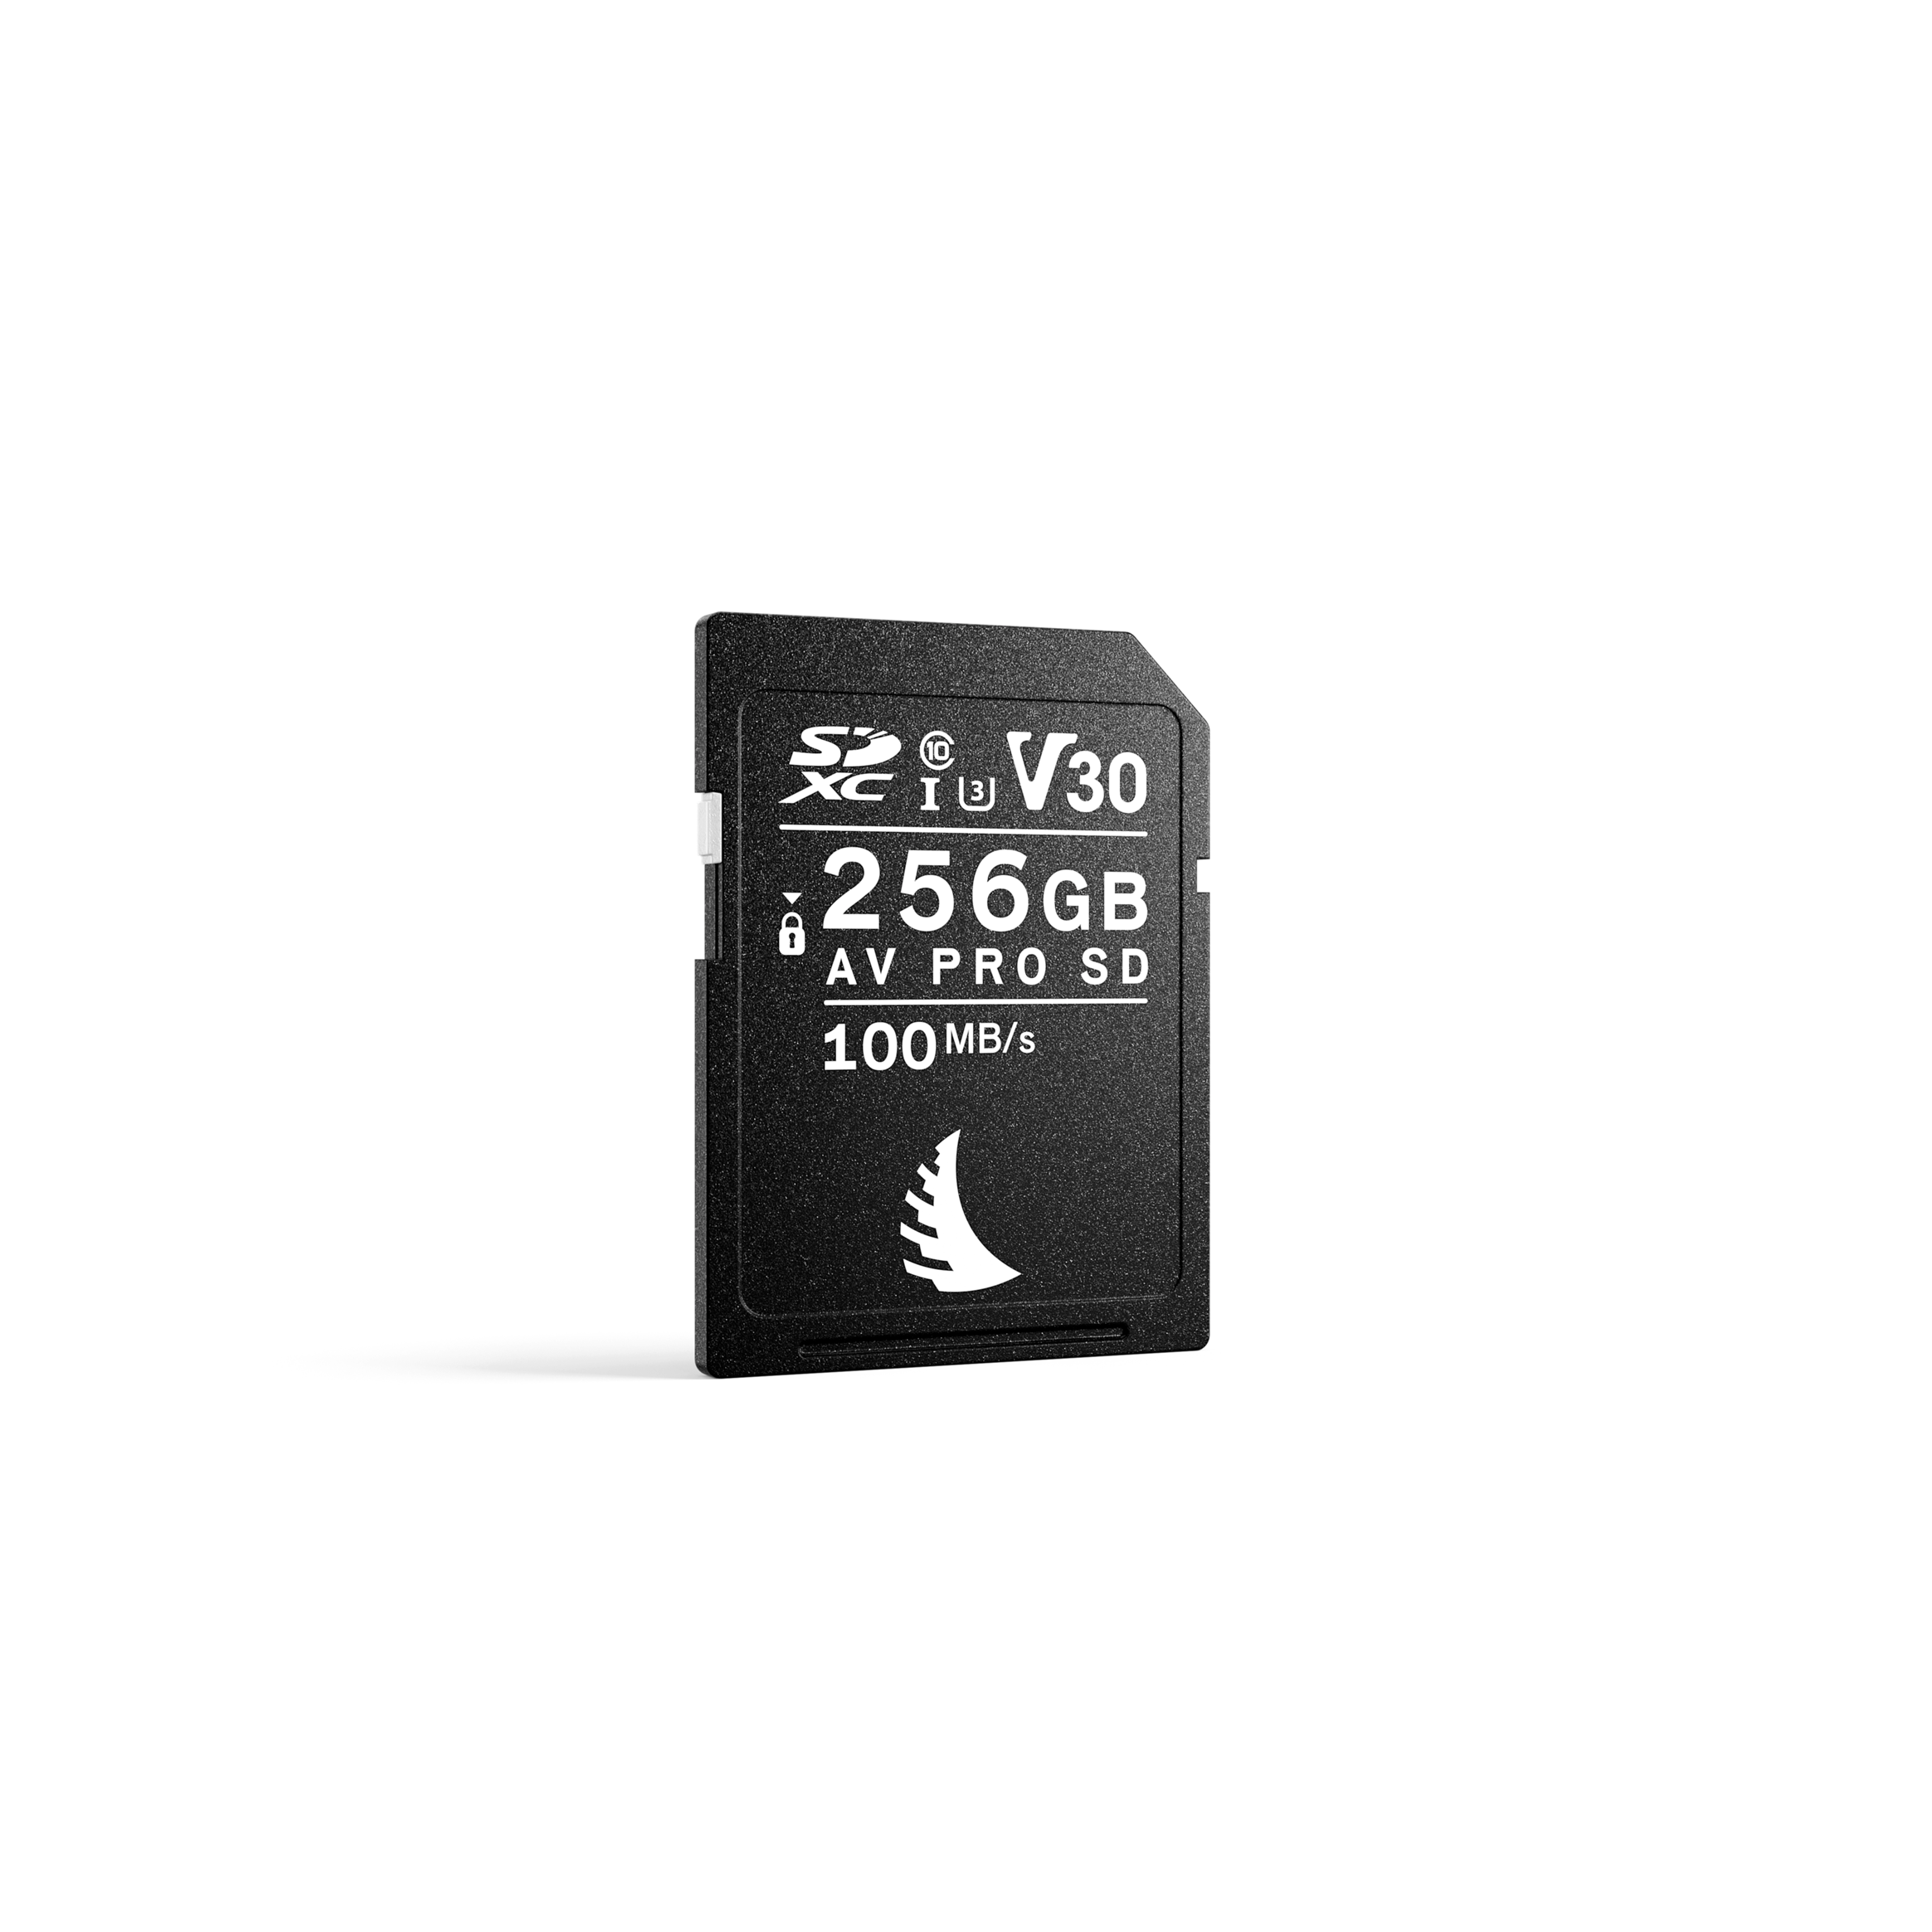 AV Pro SD 256GB V30